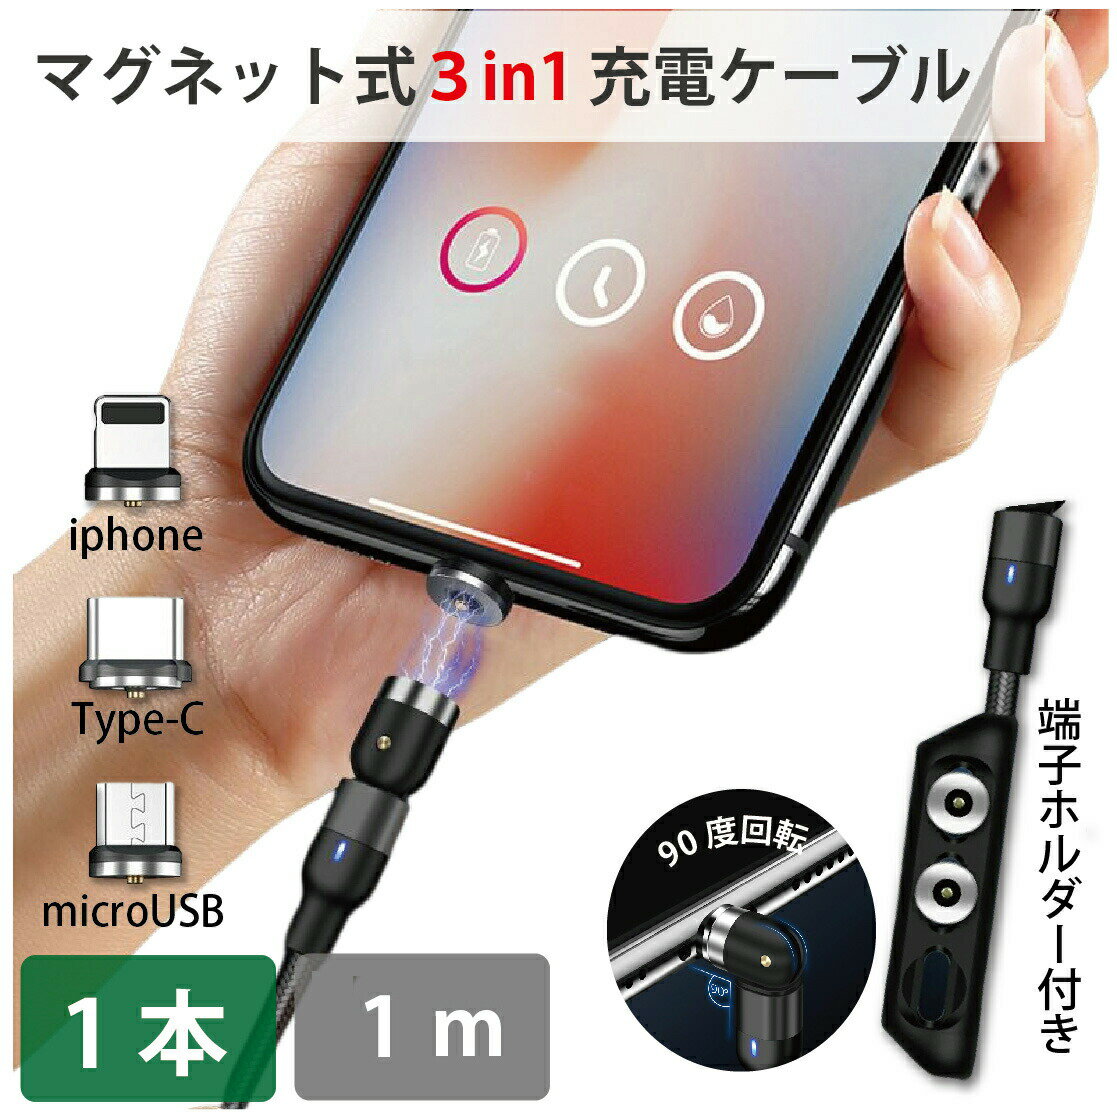 3in1 lightning ť֥ ® 1m 1 540 360ٲž USB C iPhone microUSB ...